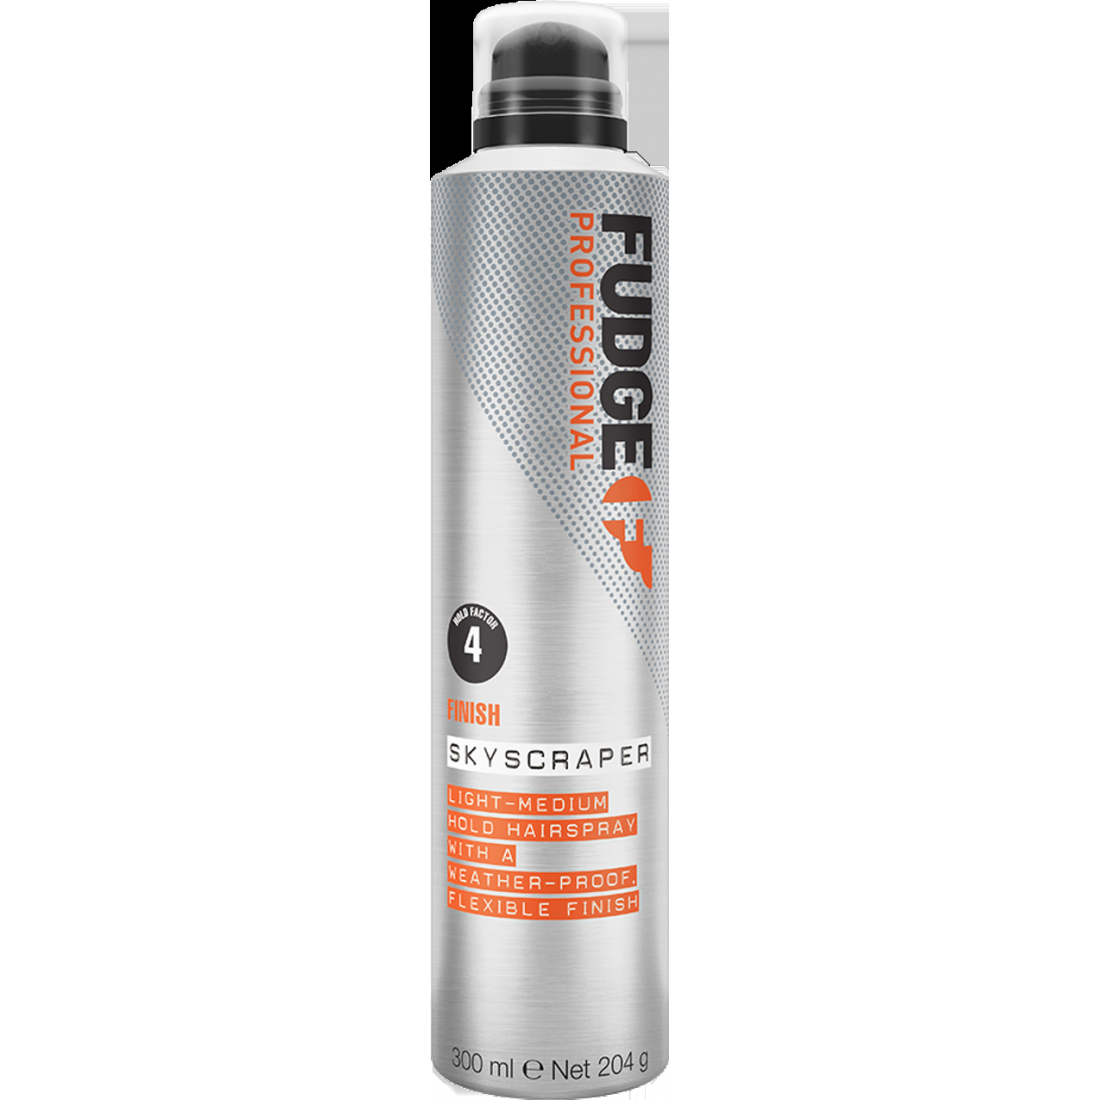 'Skyscraper Light/Medium Hold' Hairspray - 300 ml